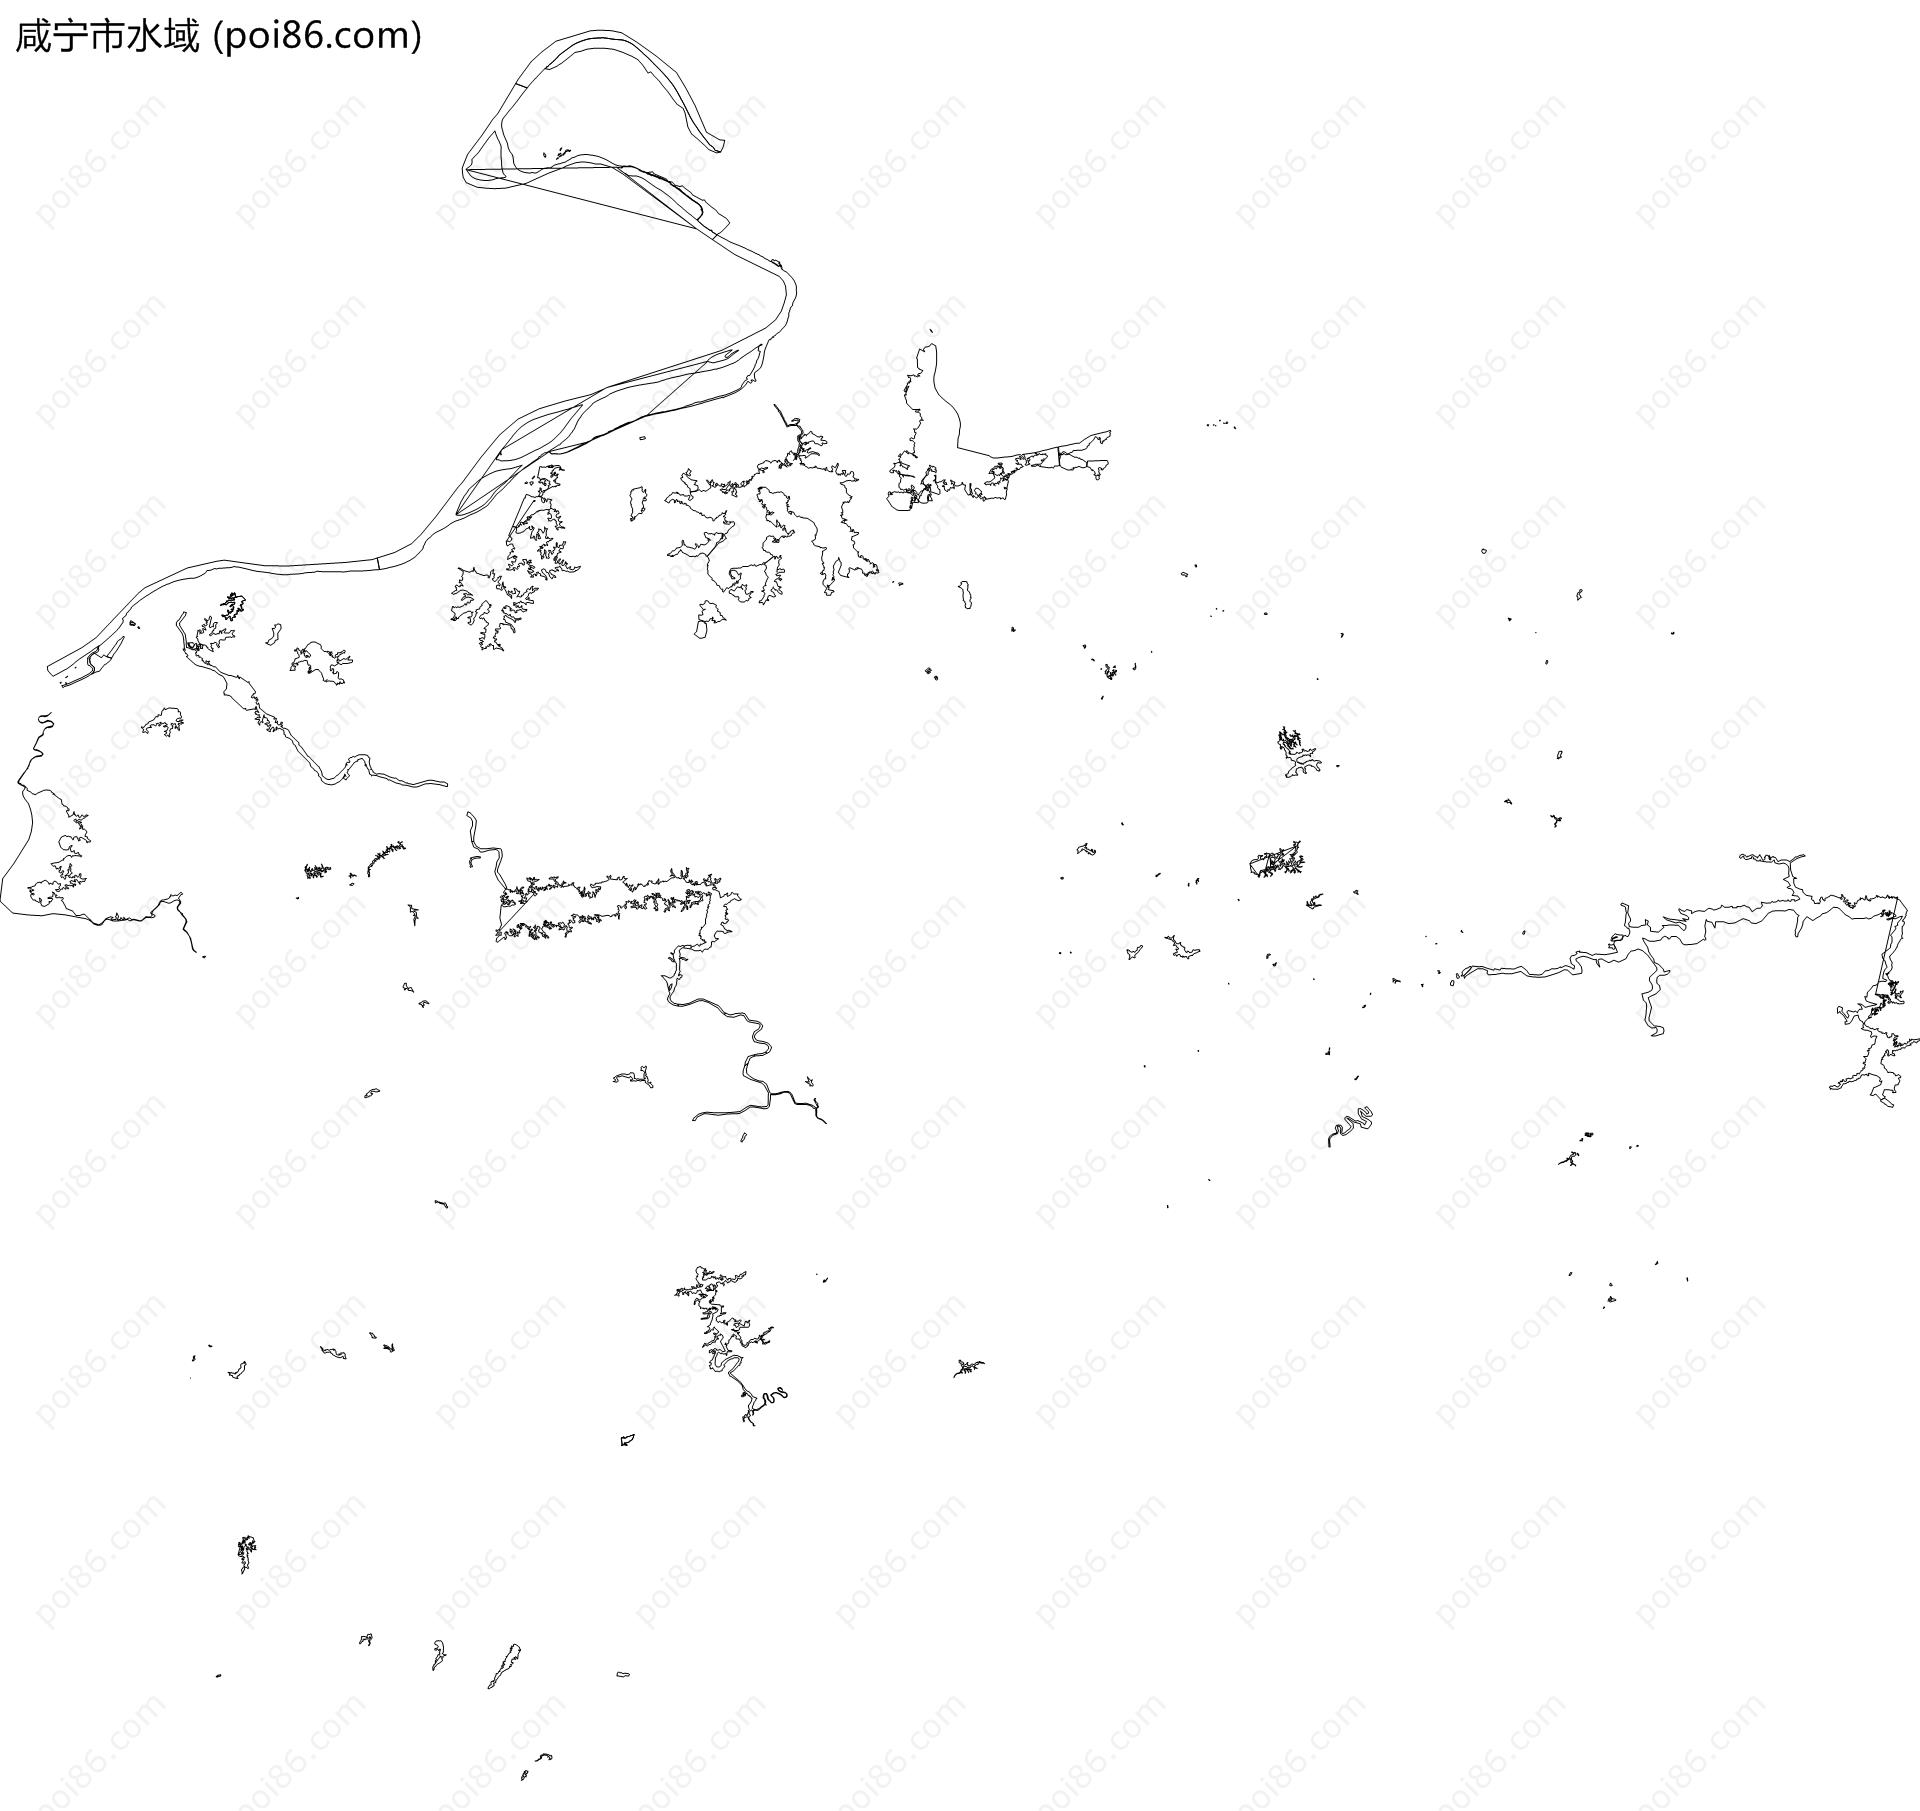 咸宁市水域地图